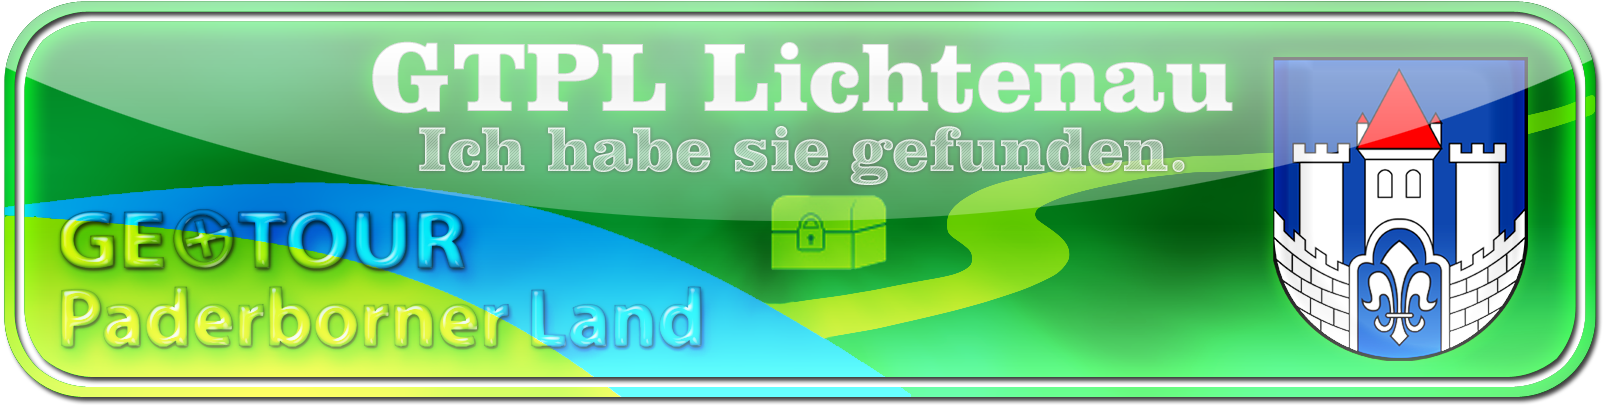 Banner GTPL Lichtenau